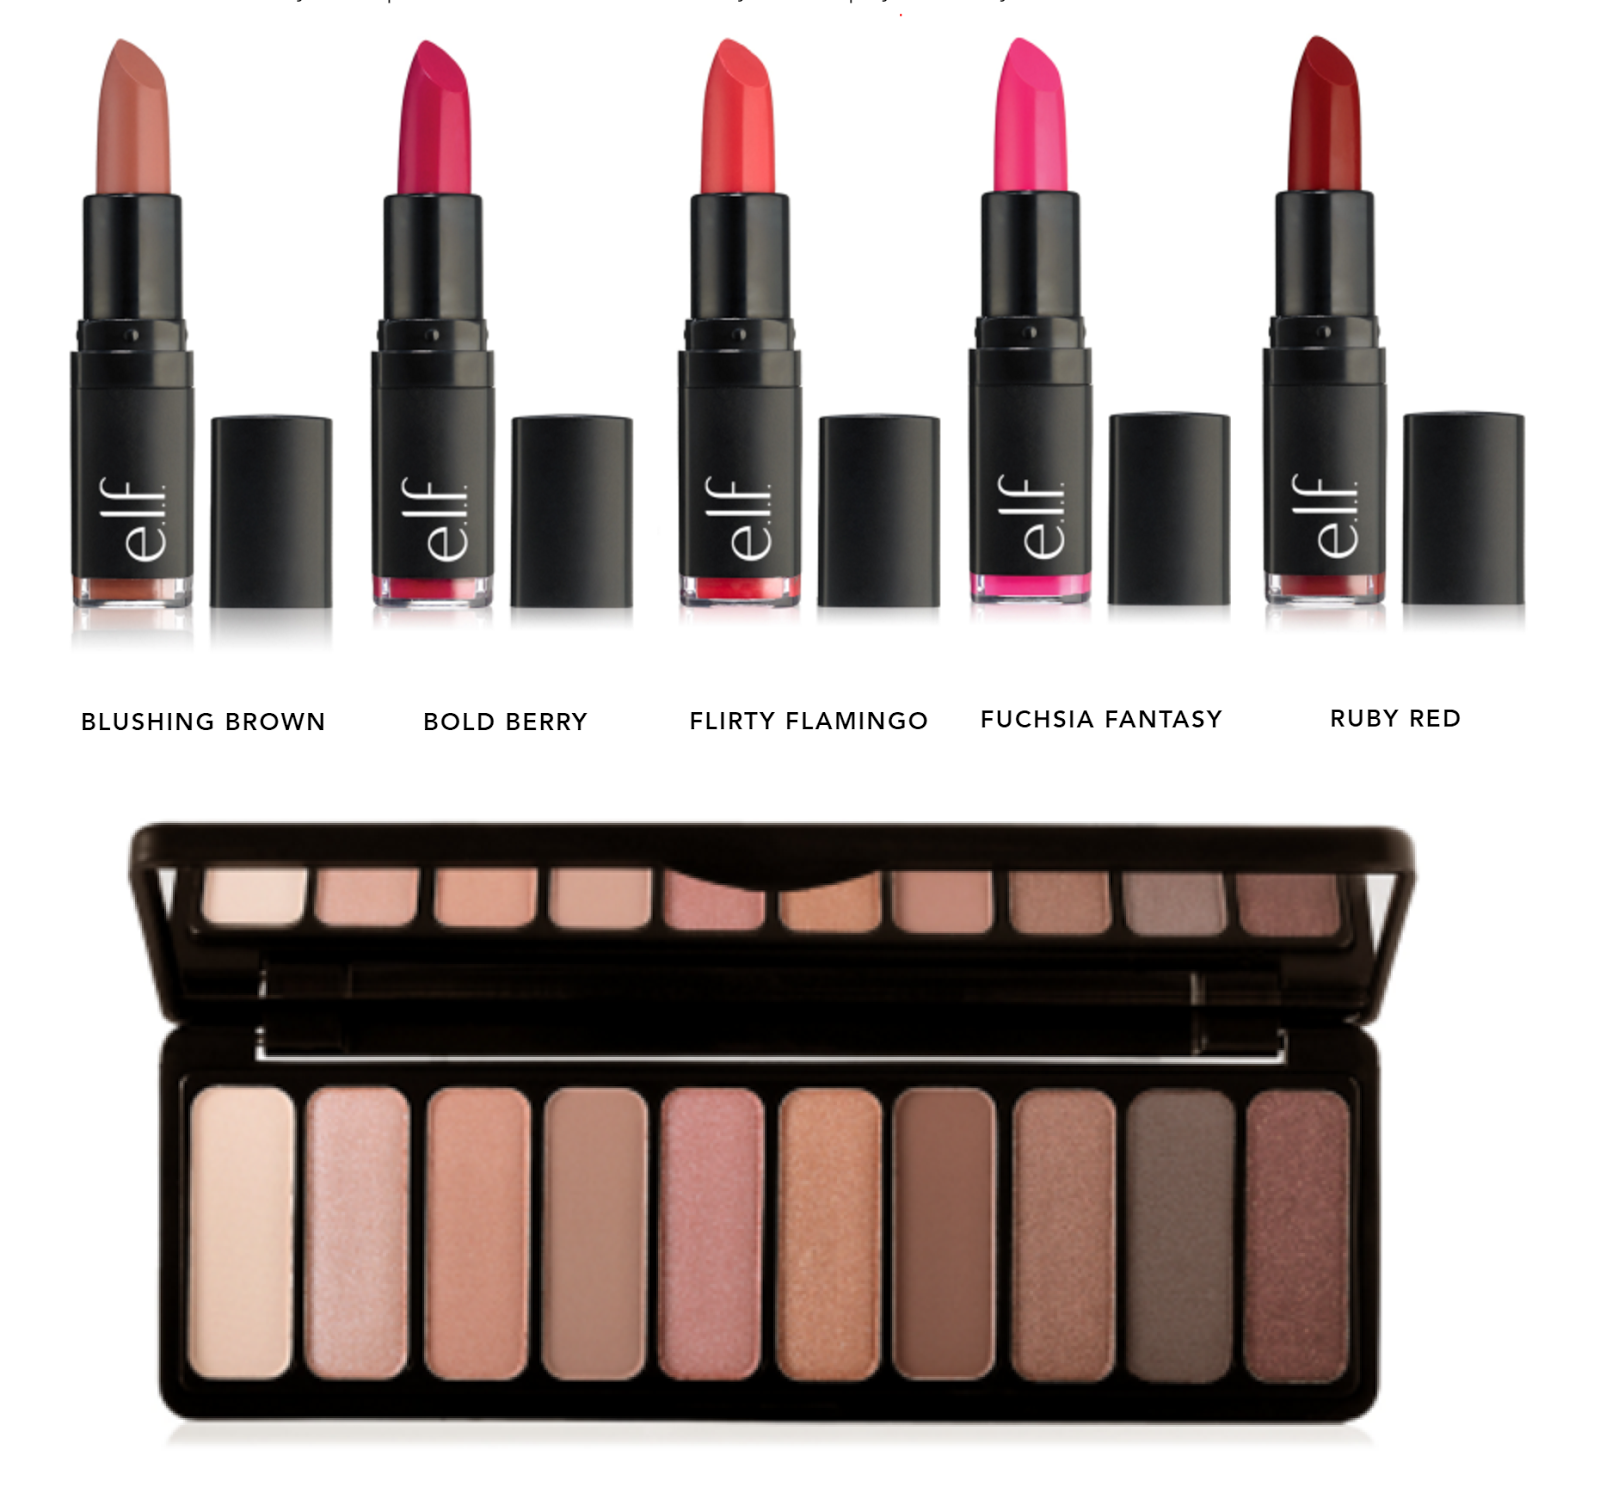 New ELF Velvet Matte Lipsticks and Rose Gold Palette | The Budget ...